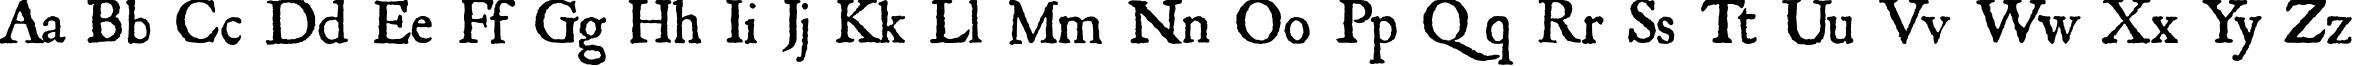 Пример написания английского алфавита шрифтом Roman Antique